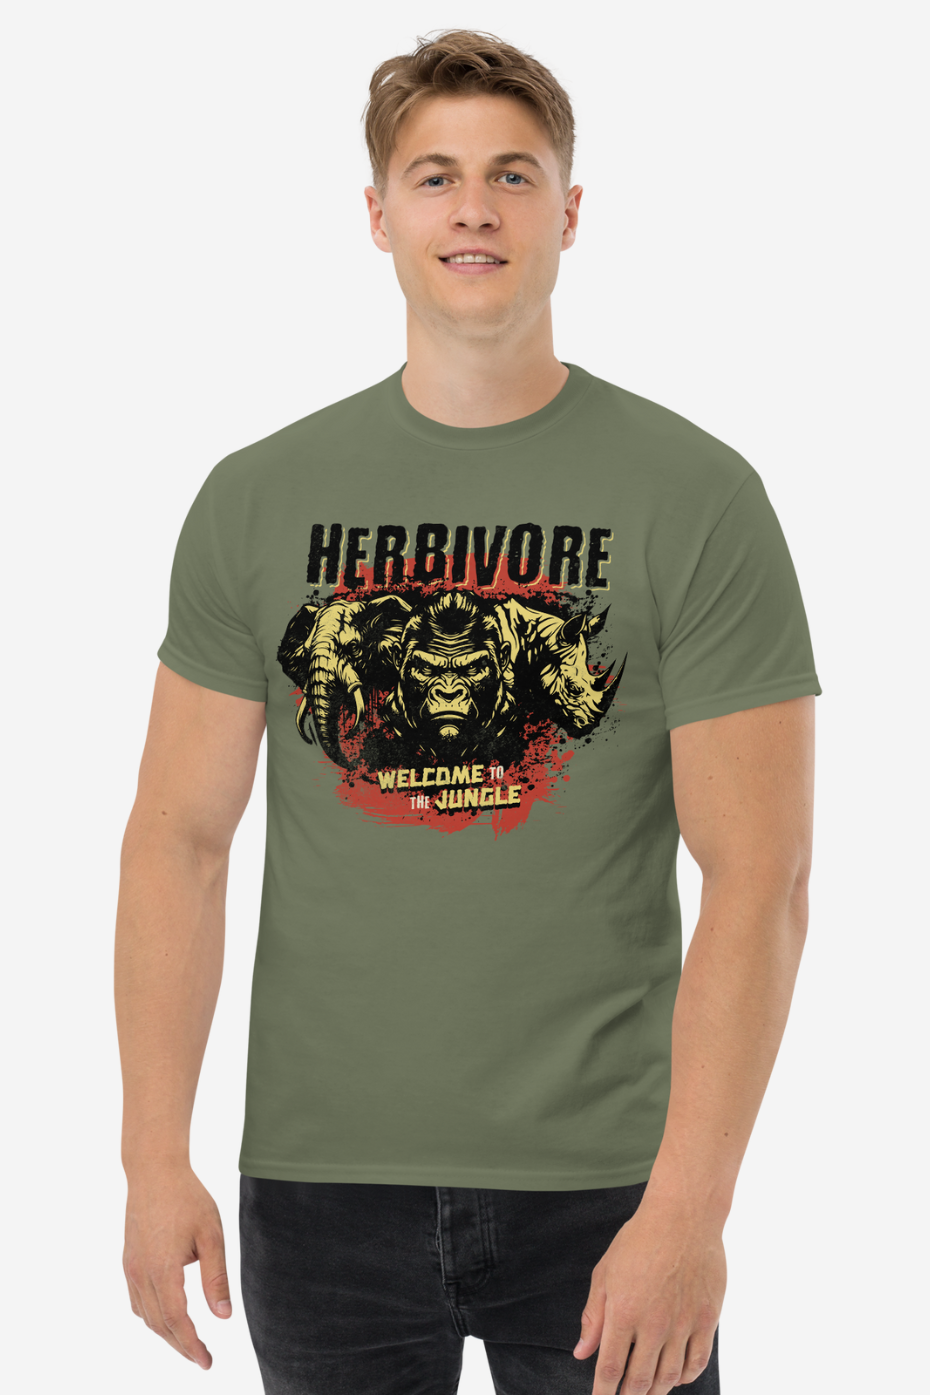 Herbivore Men's classic tee